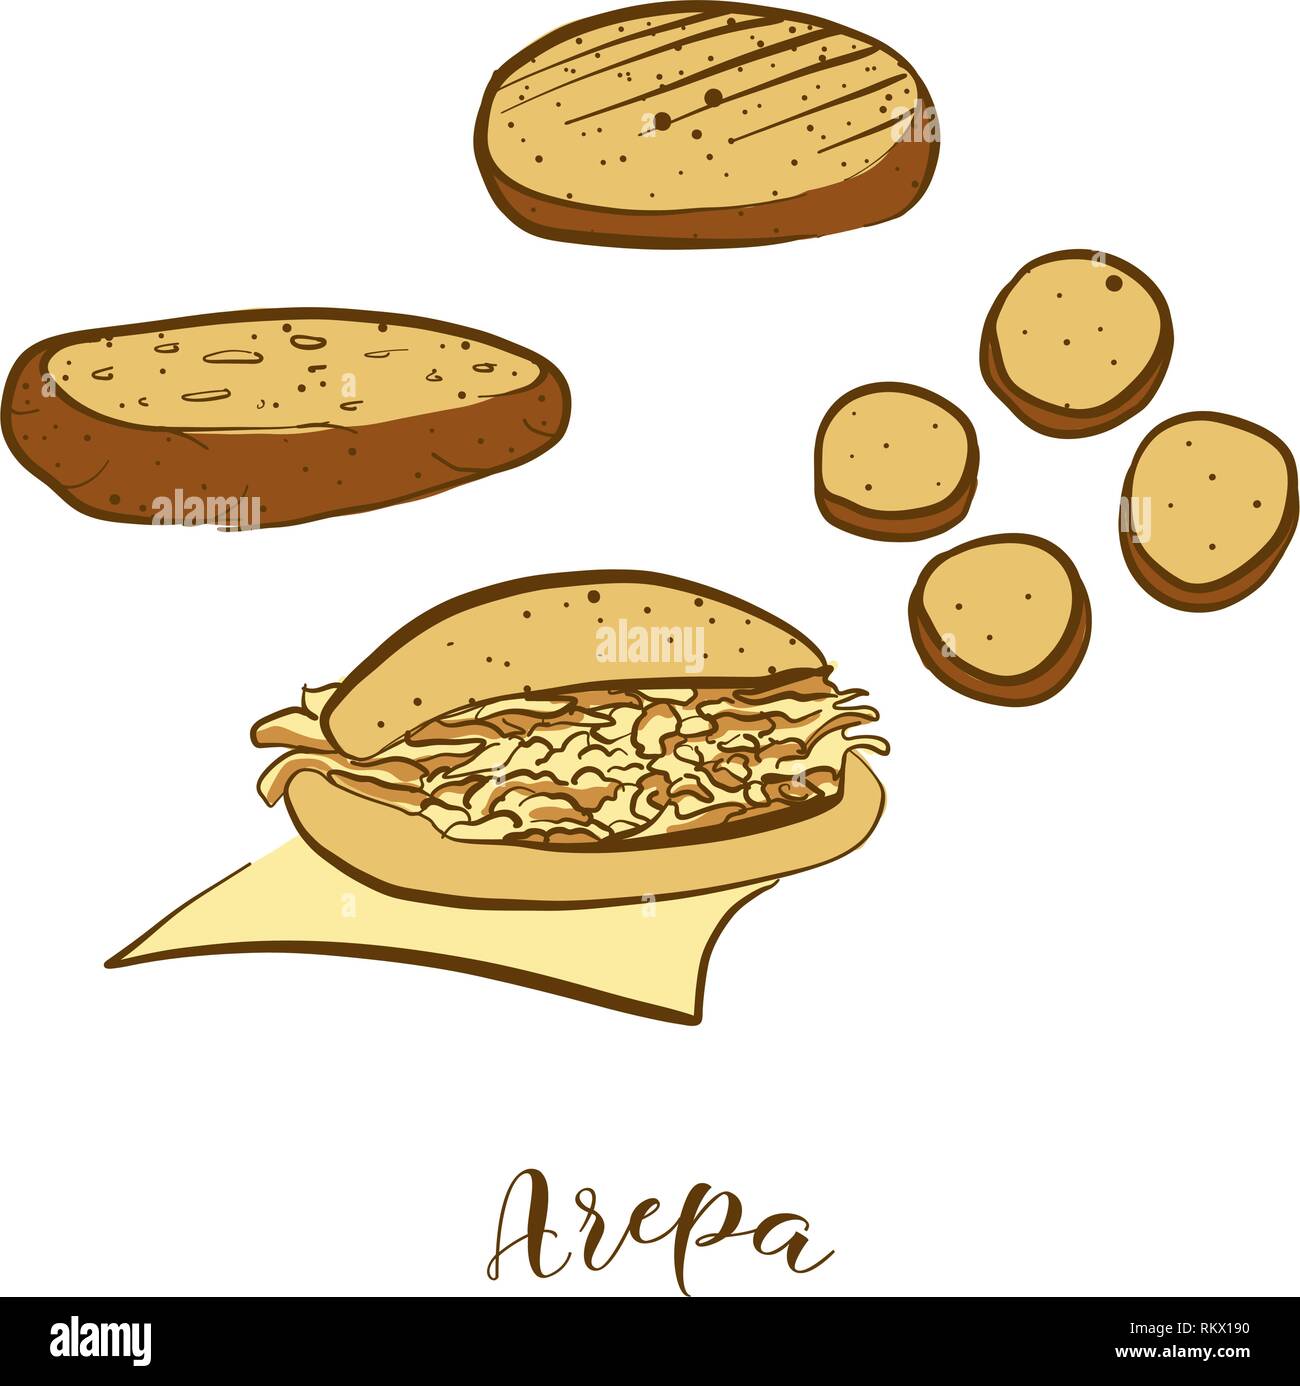 Farbige Skizzen von Arepa Brot. Vektor Zeichnung der Cornbread Essen, in der Regel in Südamerika bekannt. Farbige Brot Abbildung Serie. Stock Vektor